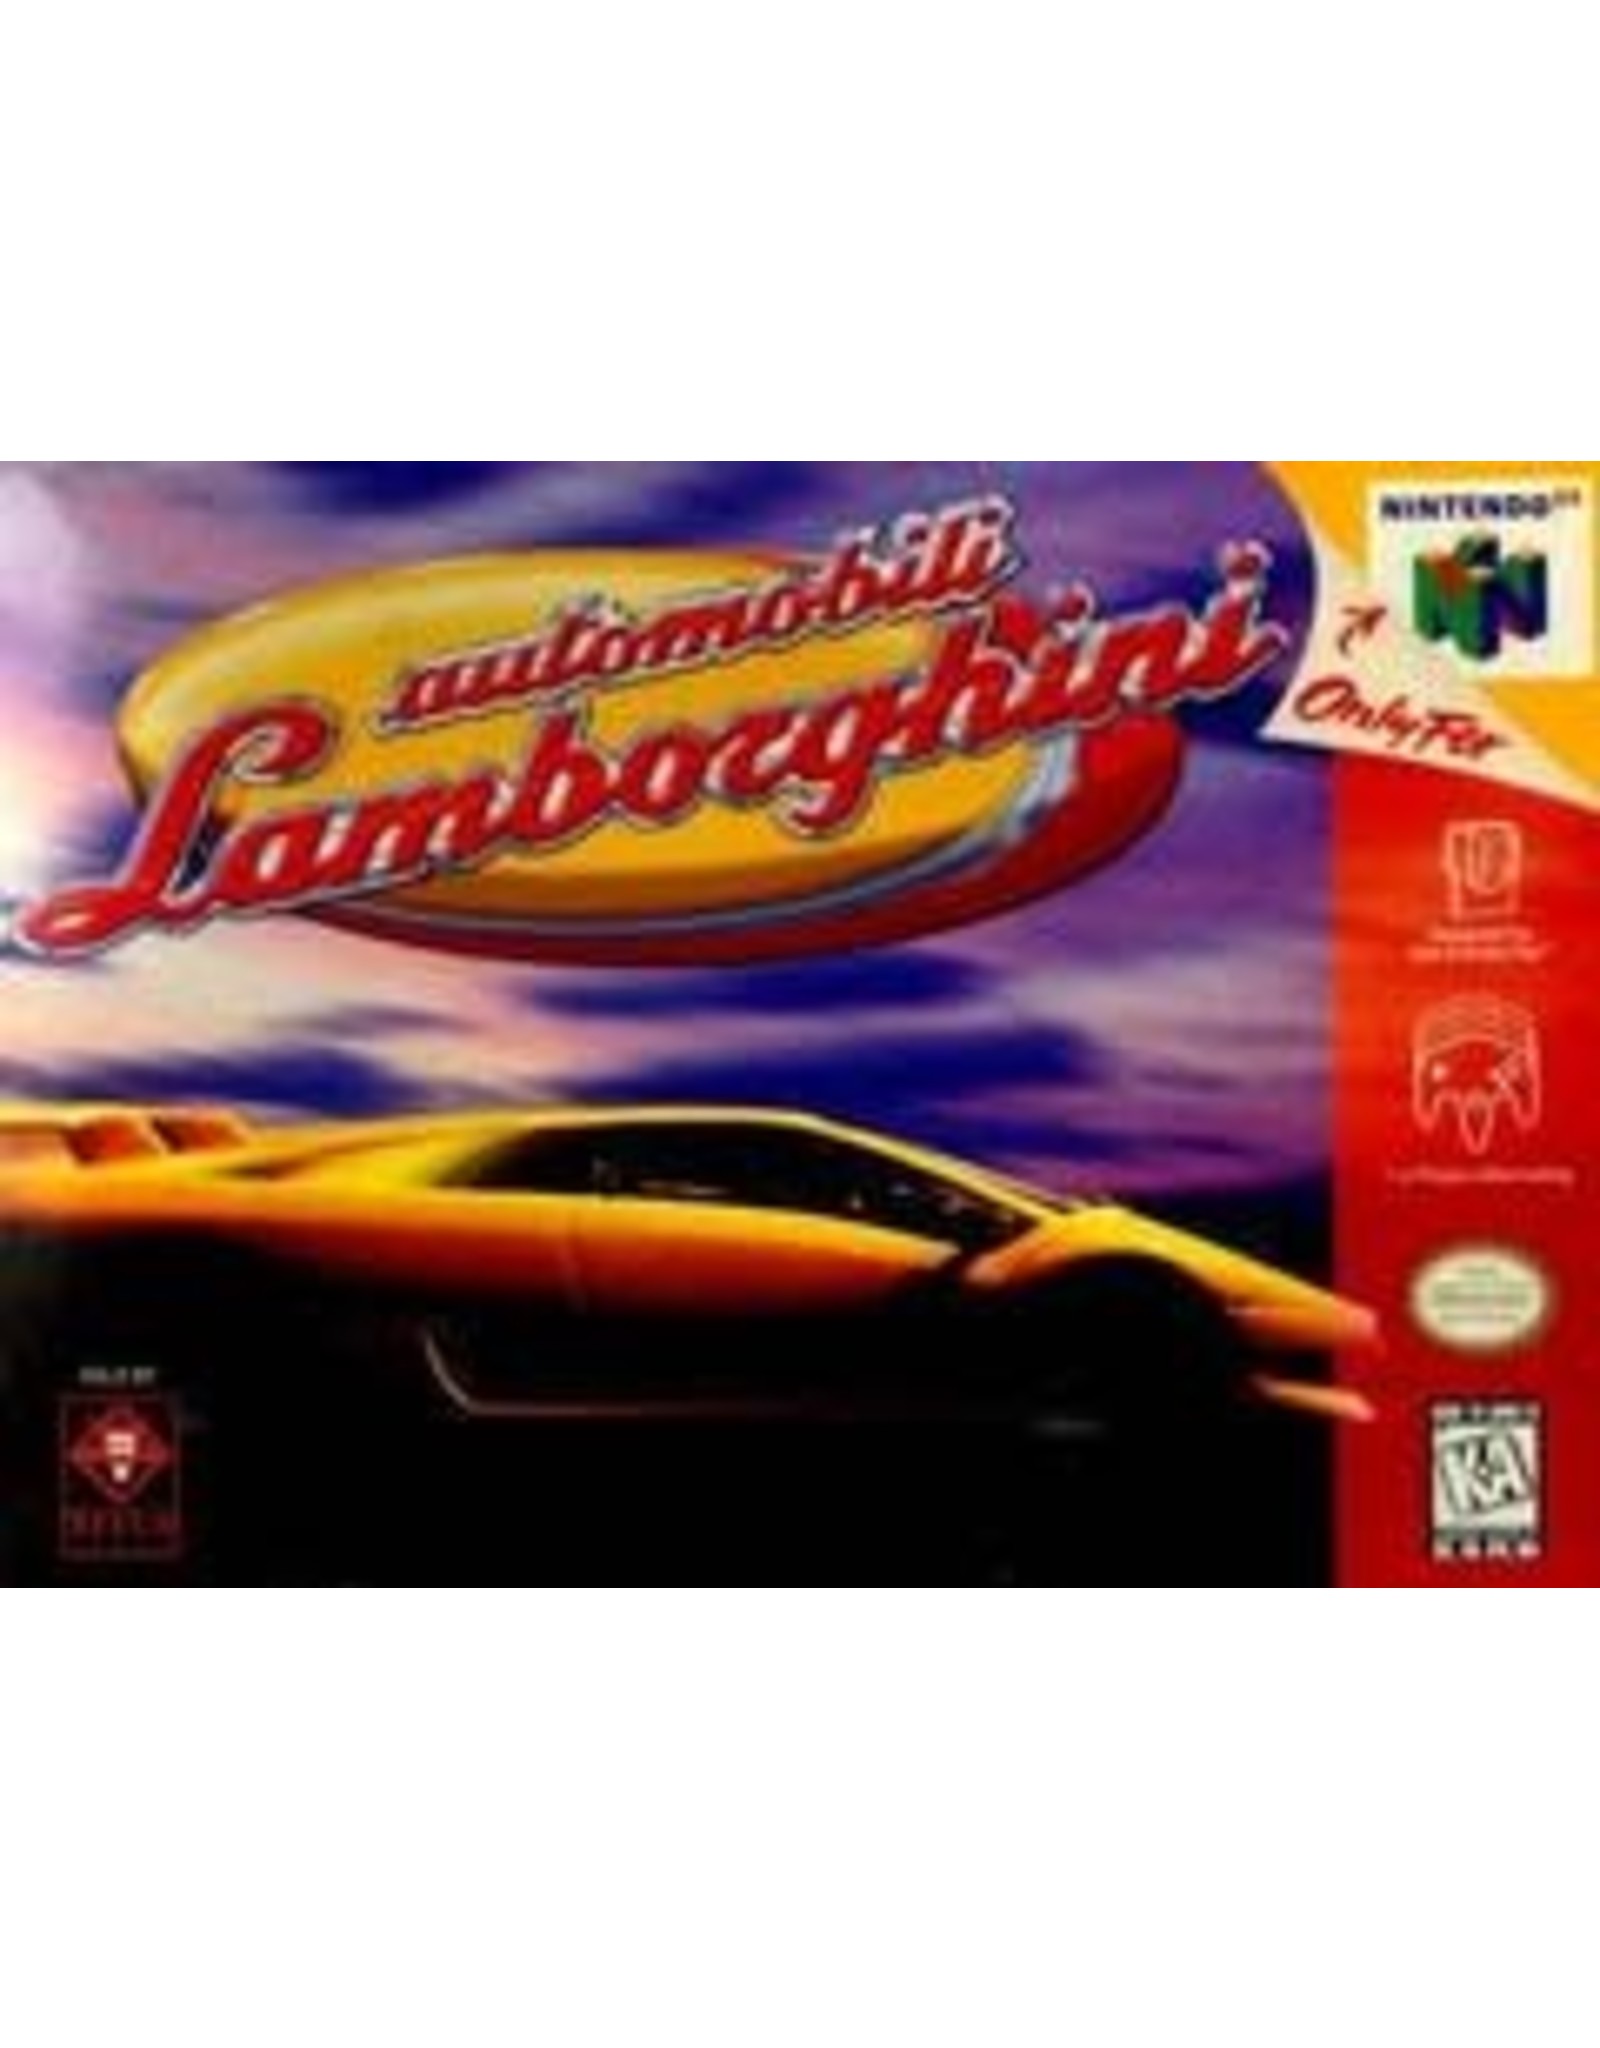 Nintendo 64 Automobili Lamborghini (Cart Only, Damaged Back Label)